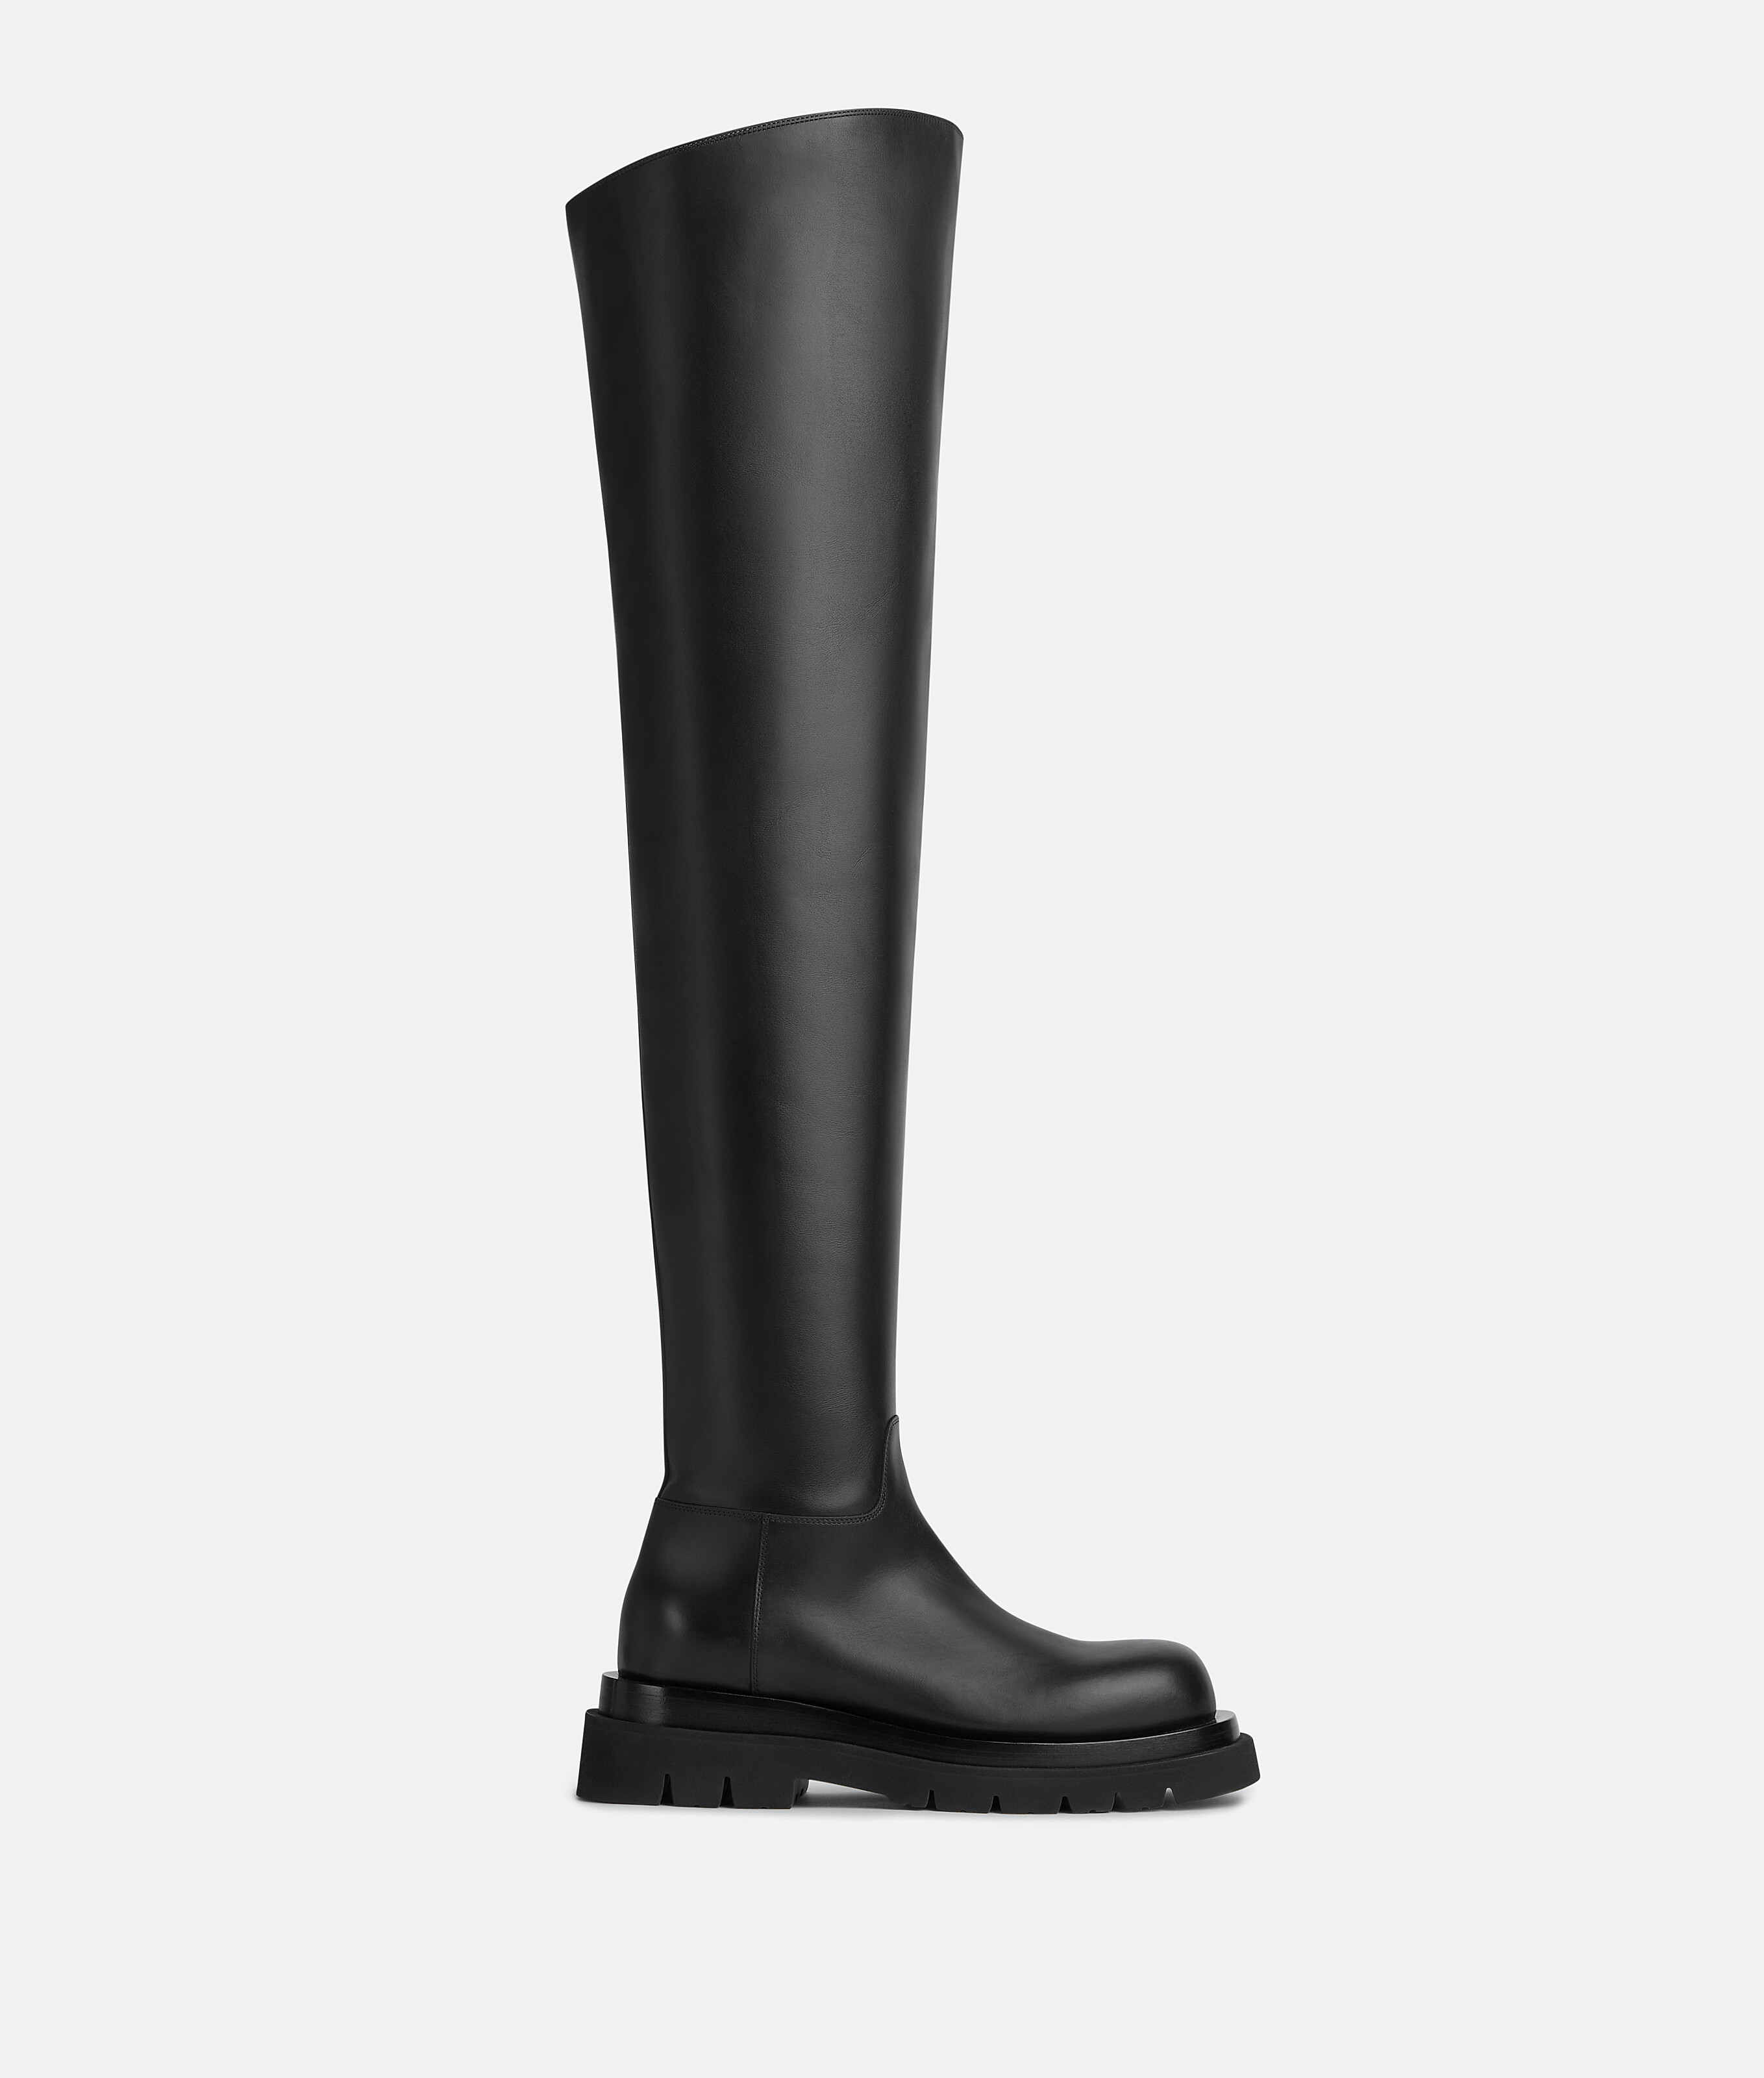 Bottega Veneta® Women's Lug Over-The-Knee Boot in Black. Shop